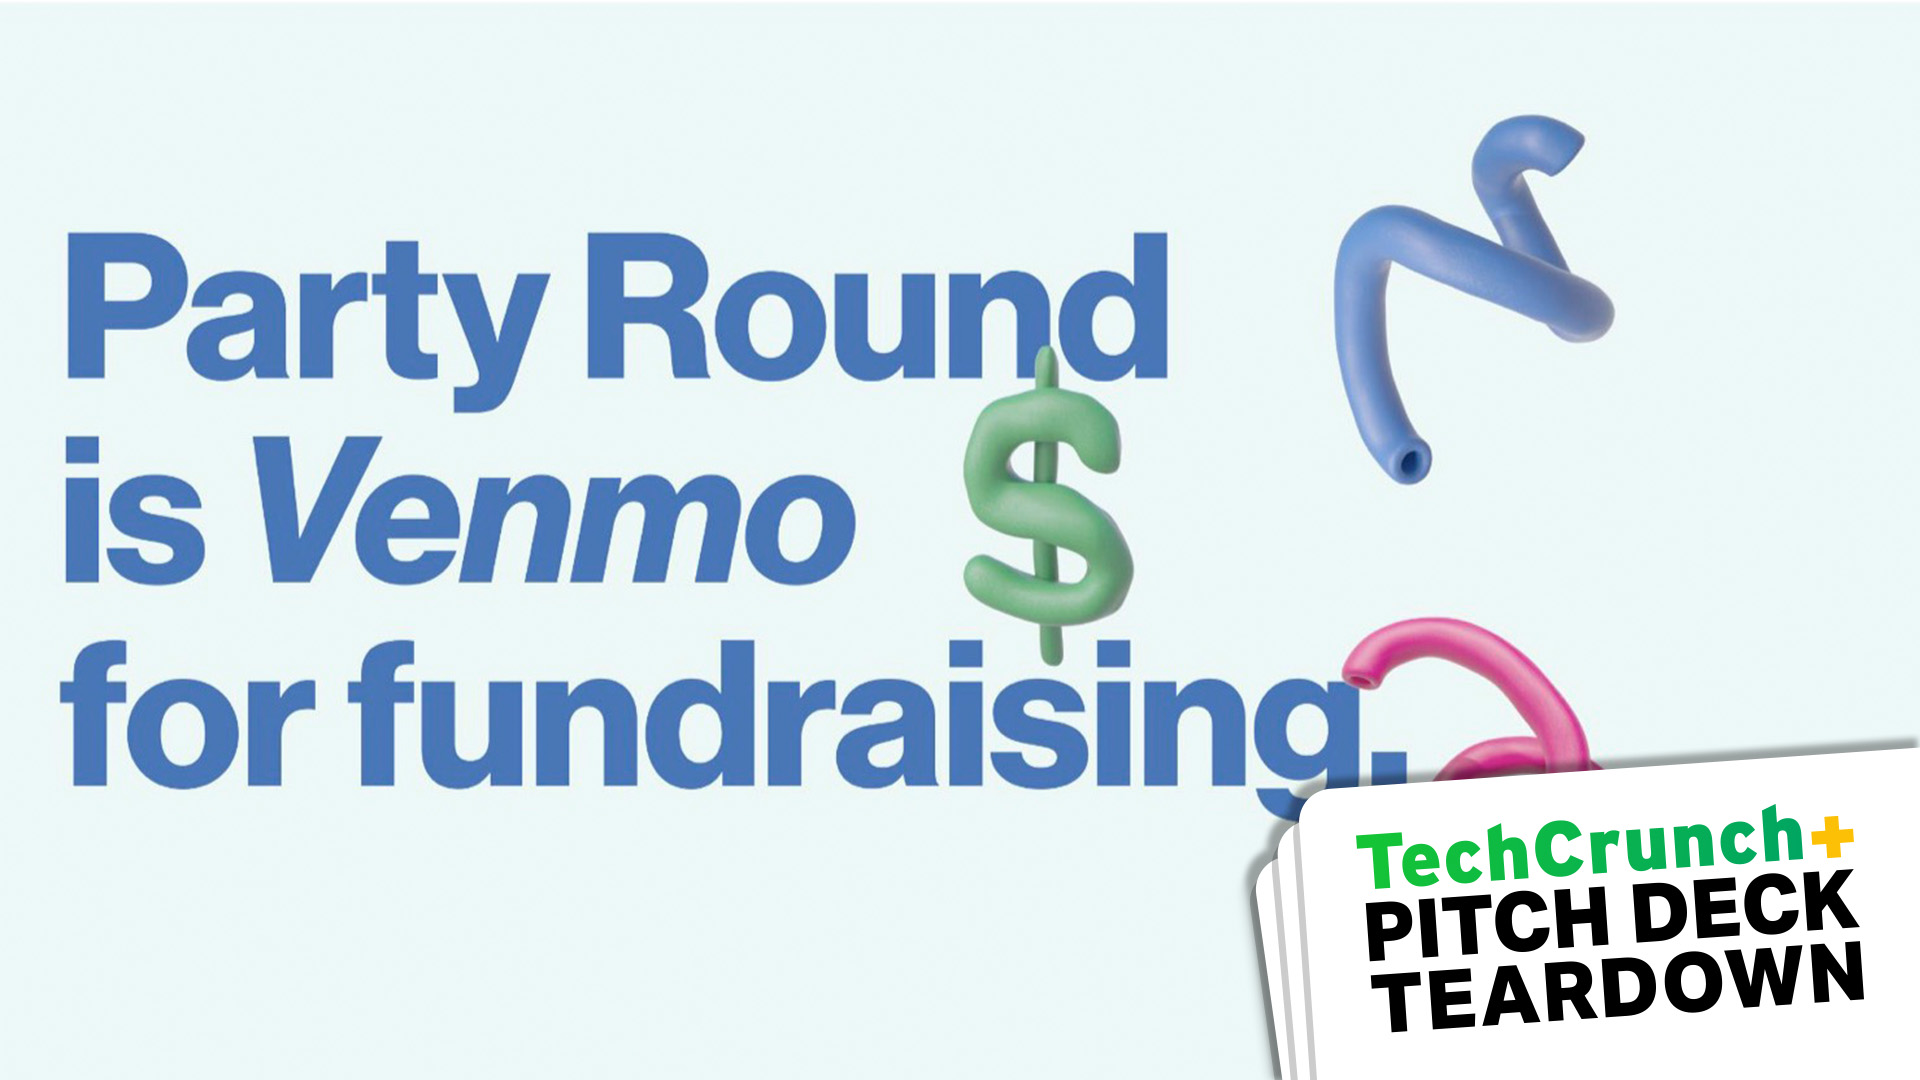 Diapositivo de capa com a leitura 'Party Round is Venmo for Fundraising'